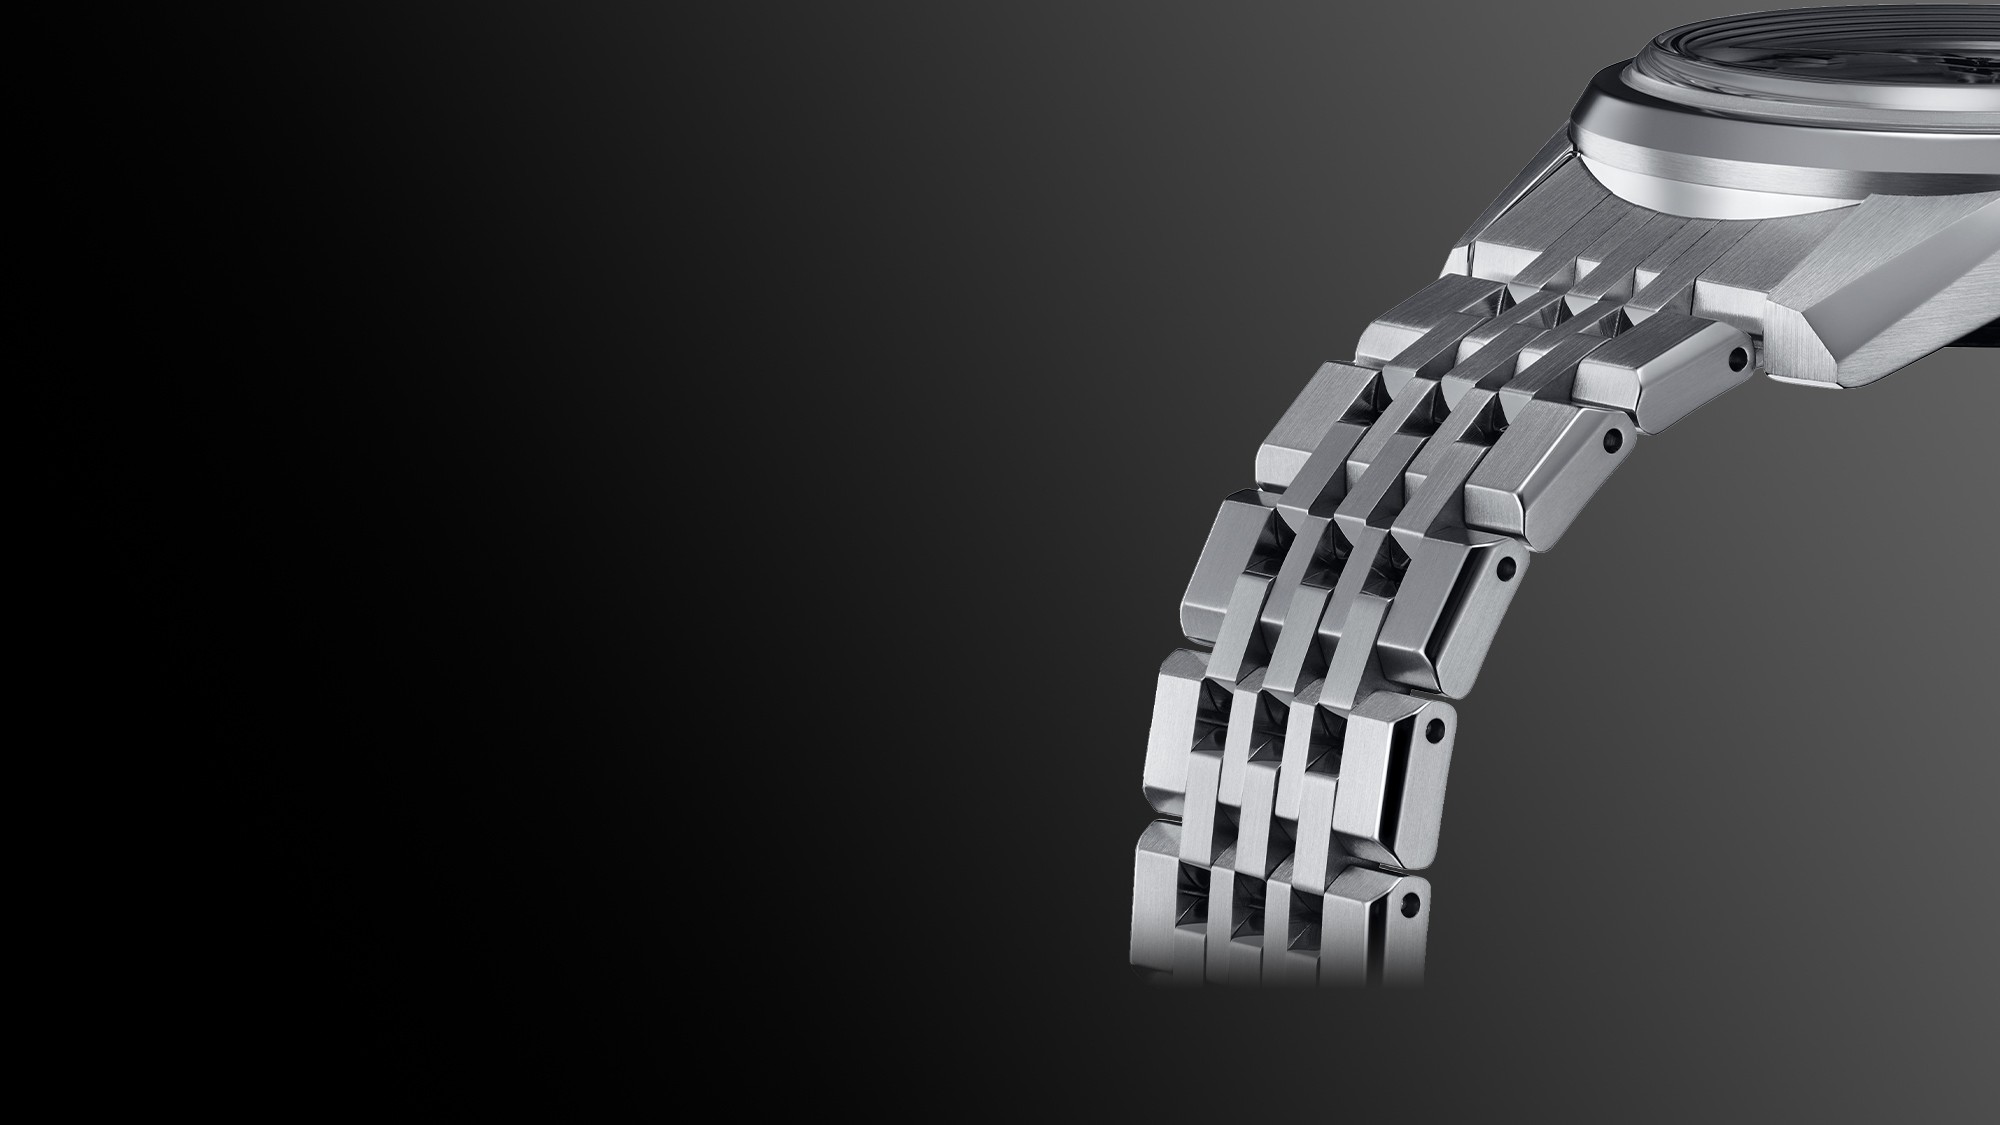 Fotogradia do detalhe da bracelete metálica dos relógios mecânicos King Seiko, com muitas superfícies planas e elos biselados a reflectirem a luz.